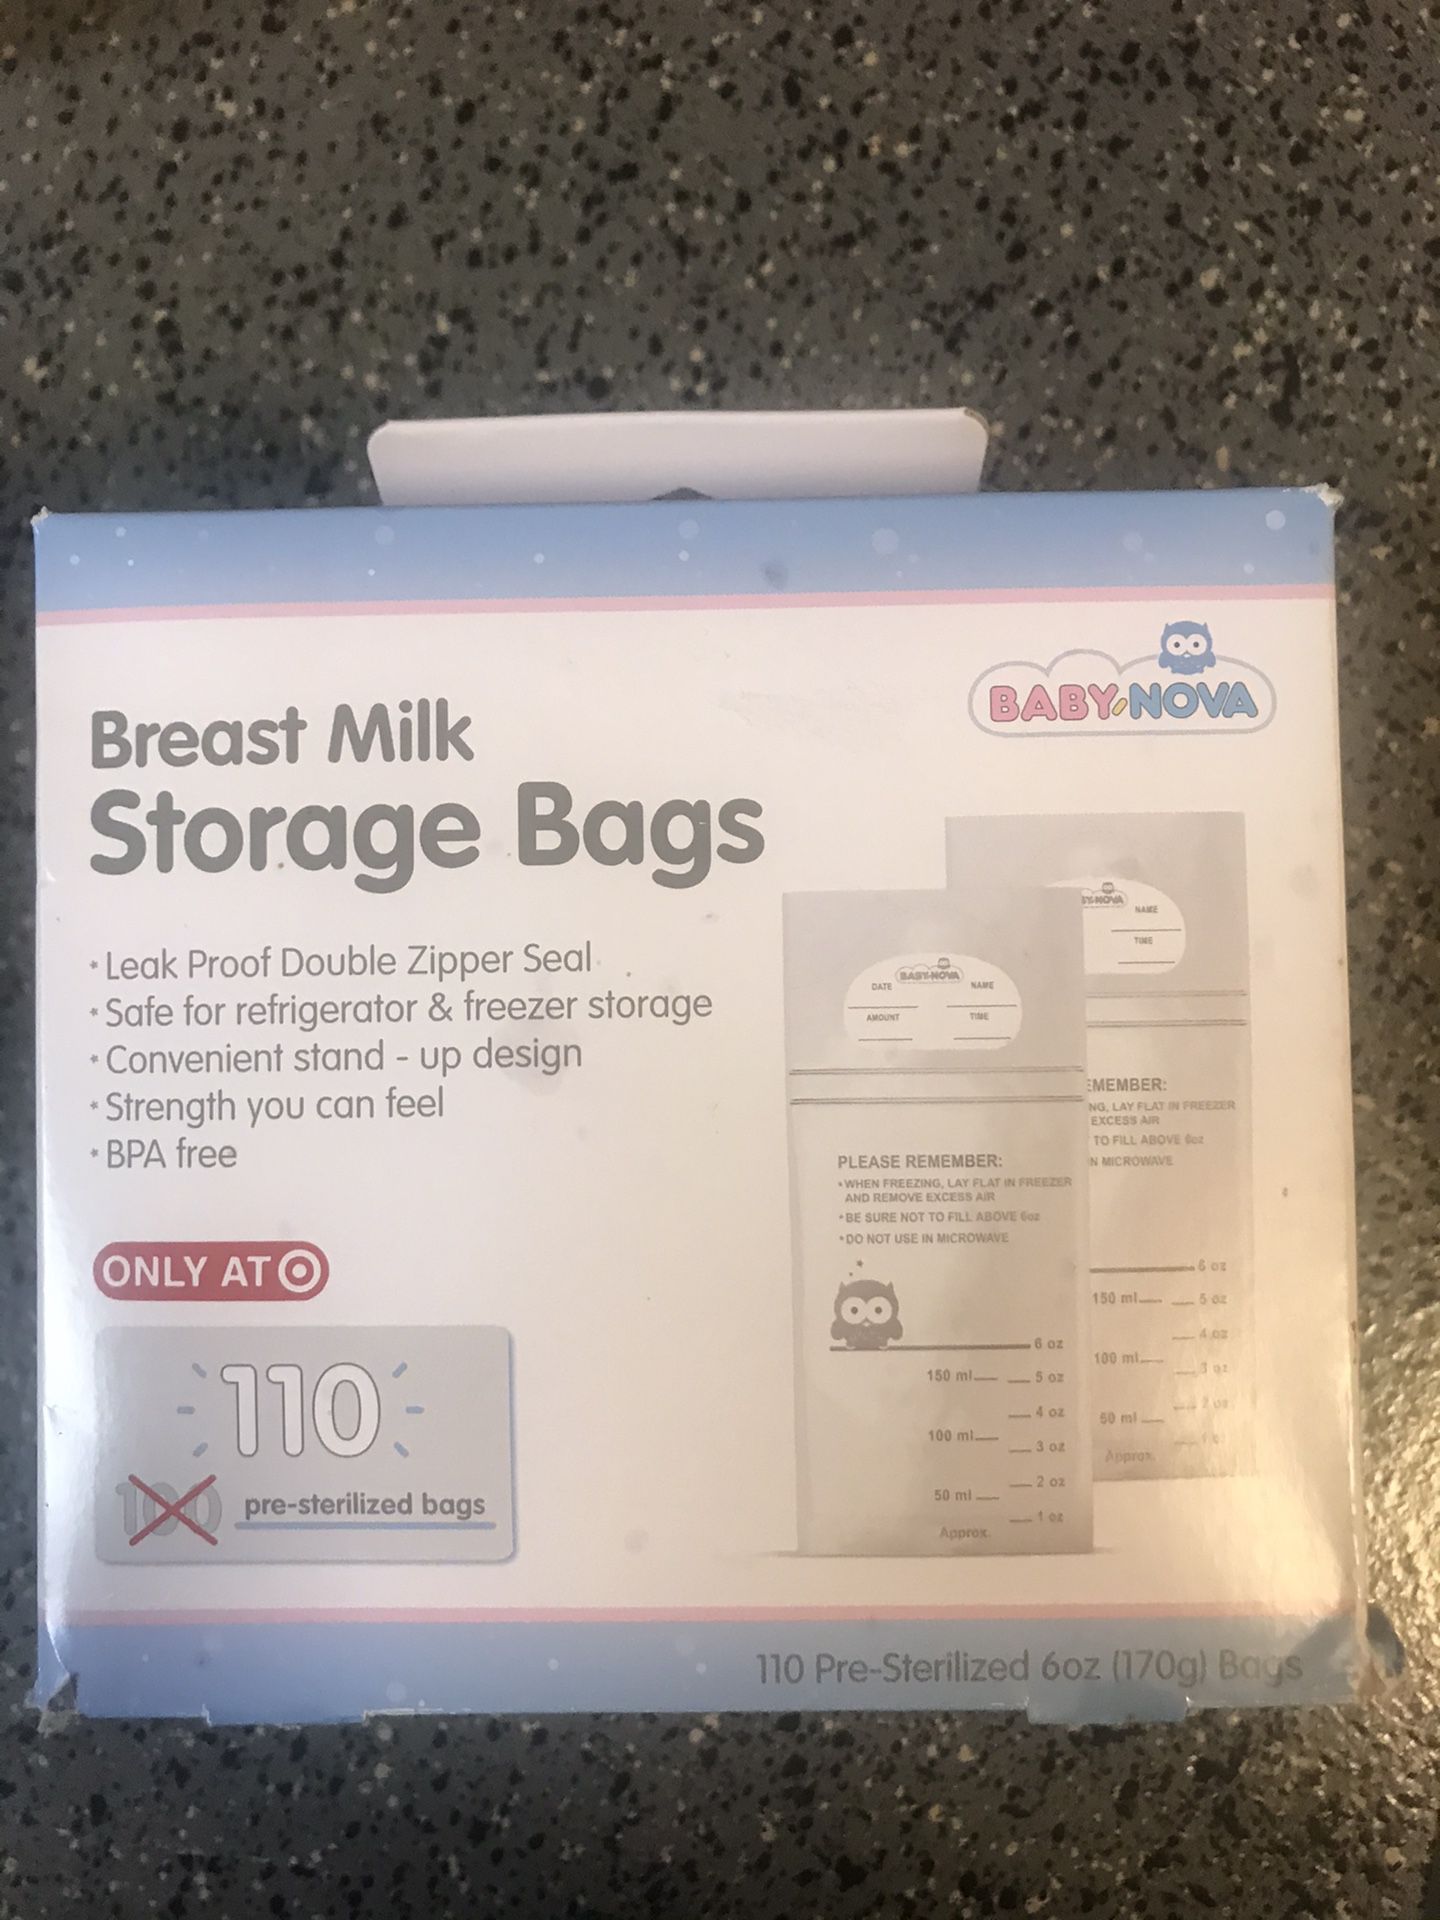 Target brand milk baggies